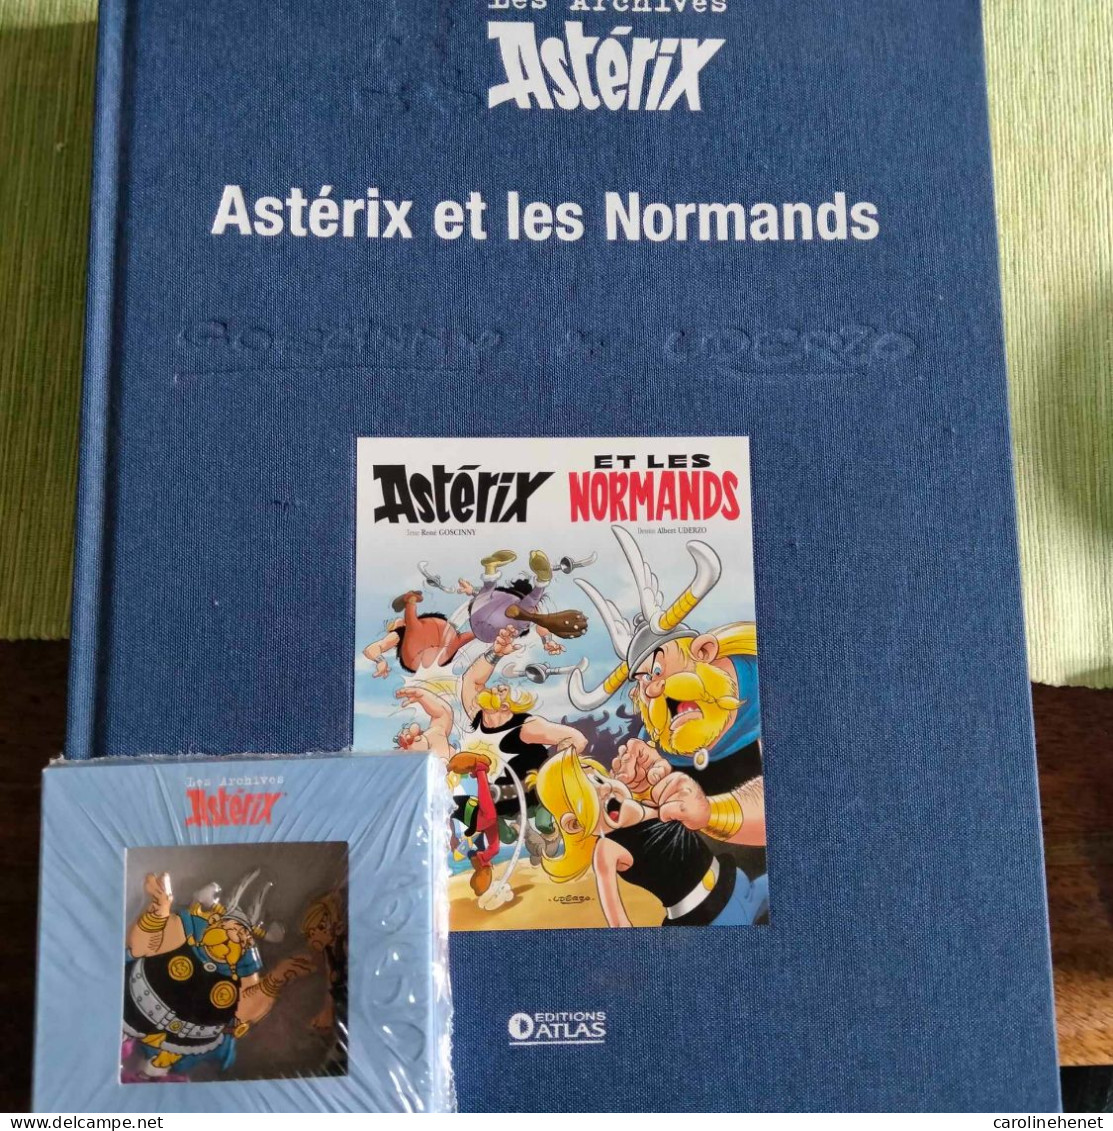 BD Astérix Archives et figurines en métal